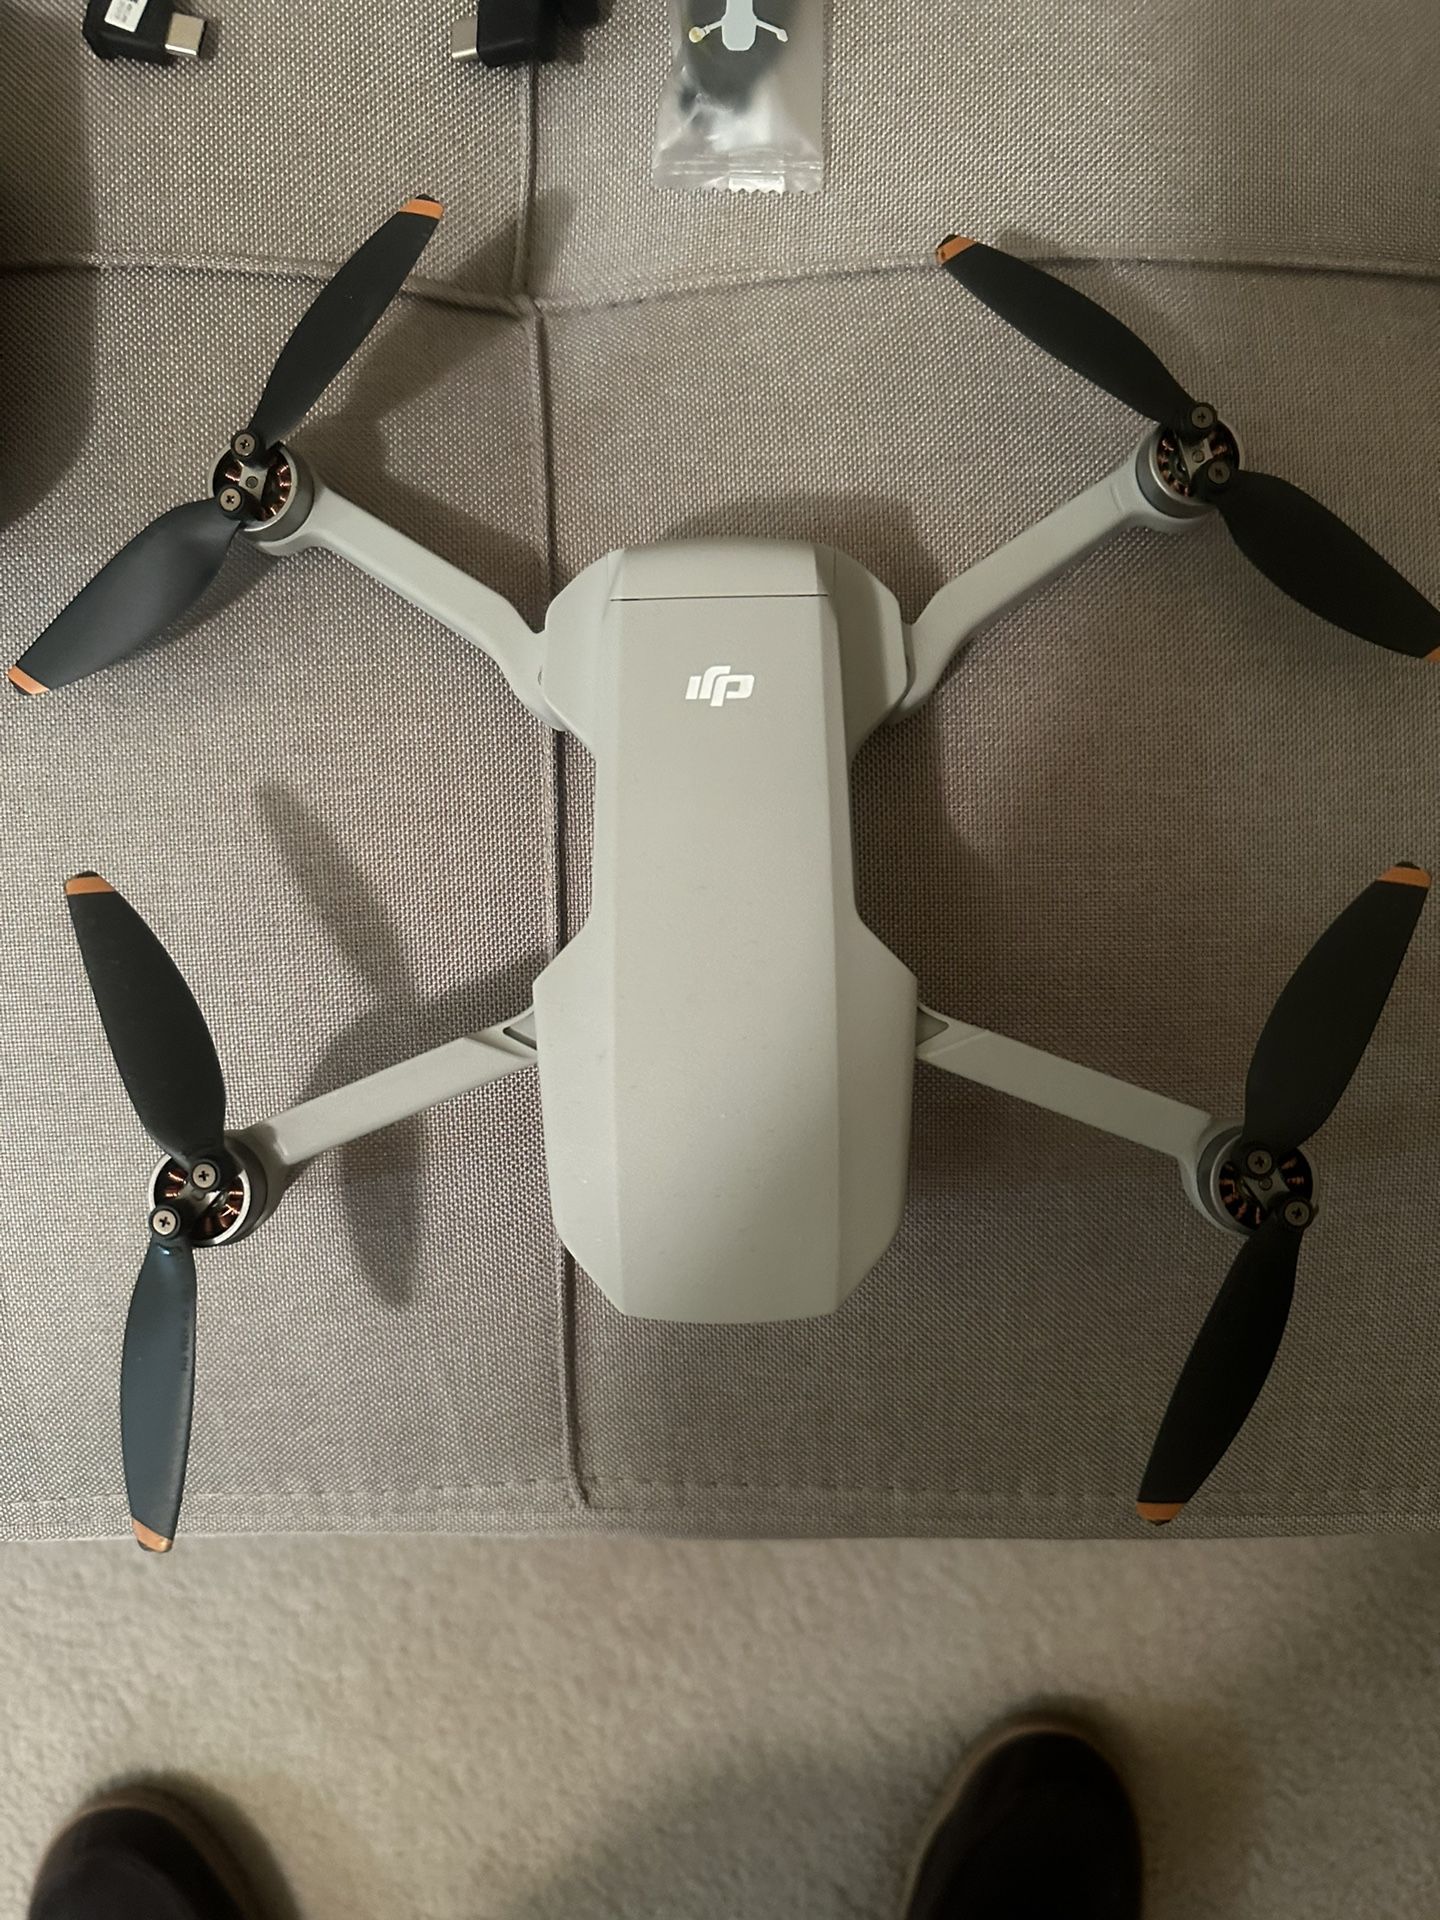 Dji Mini Drone